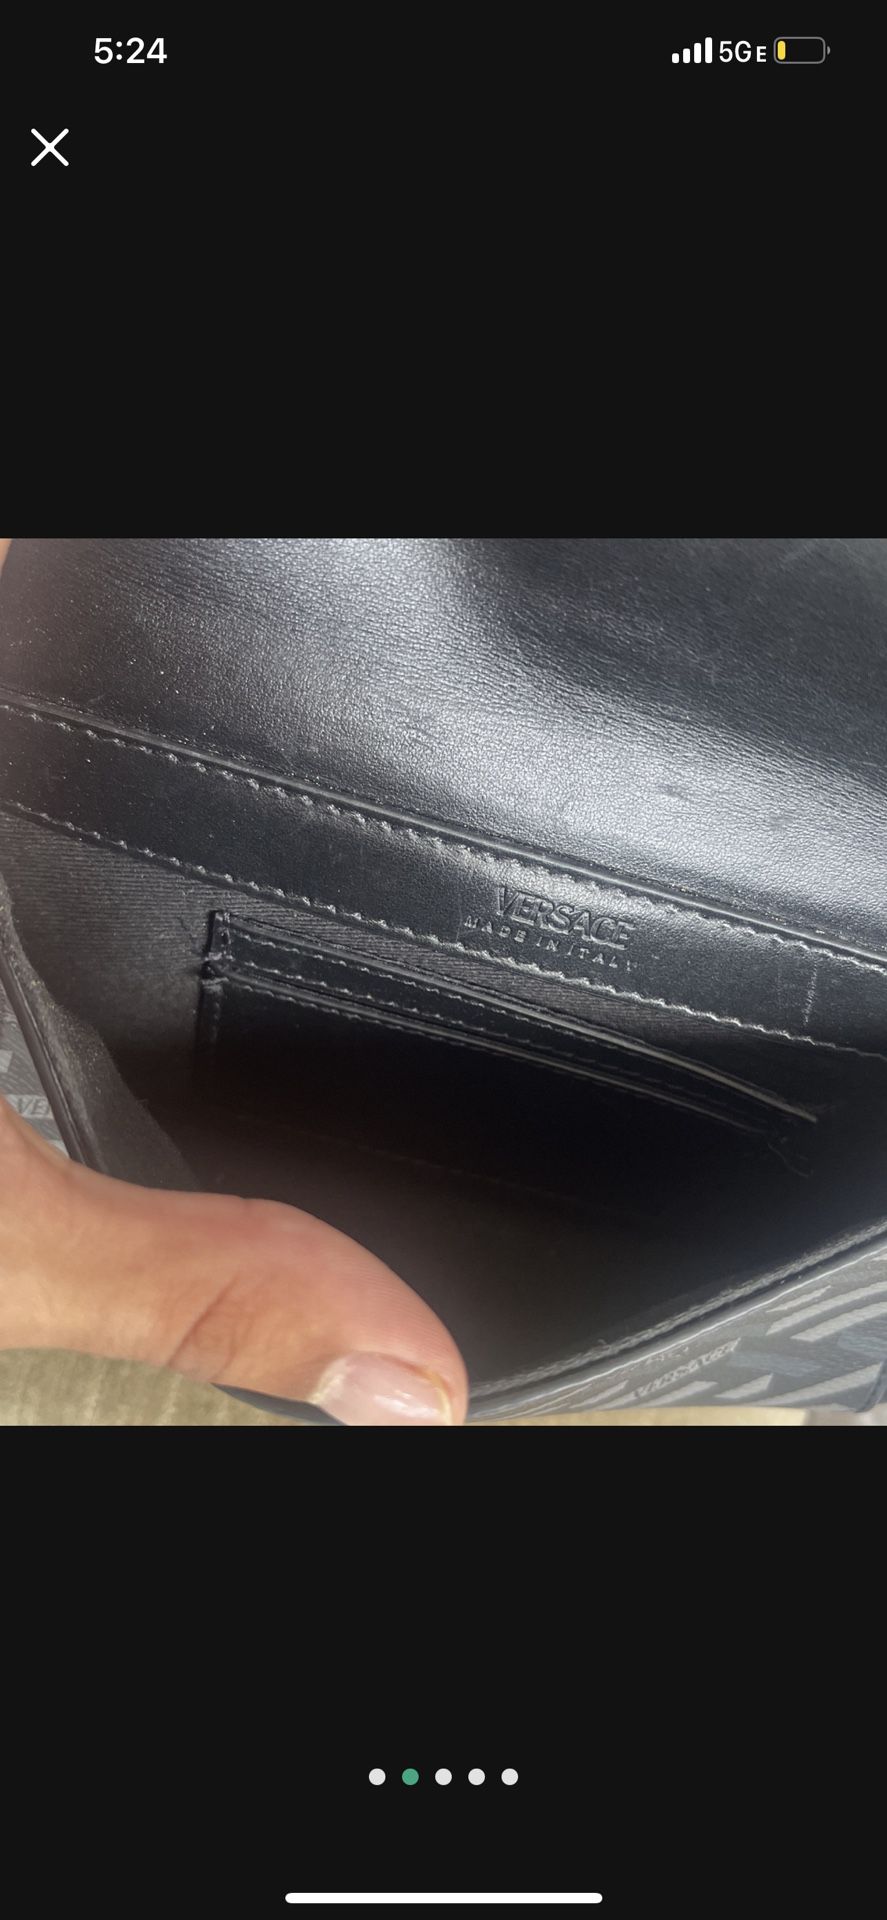 Versace Black Leather V Greca Signature Belt Bag Versace